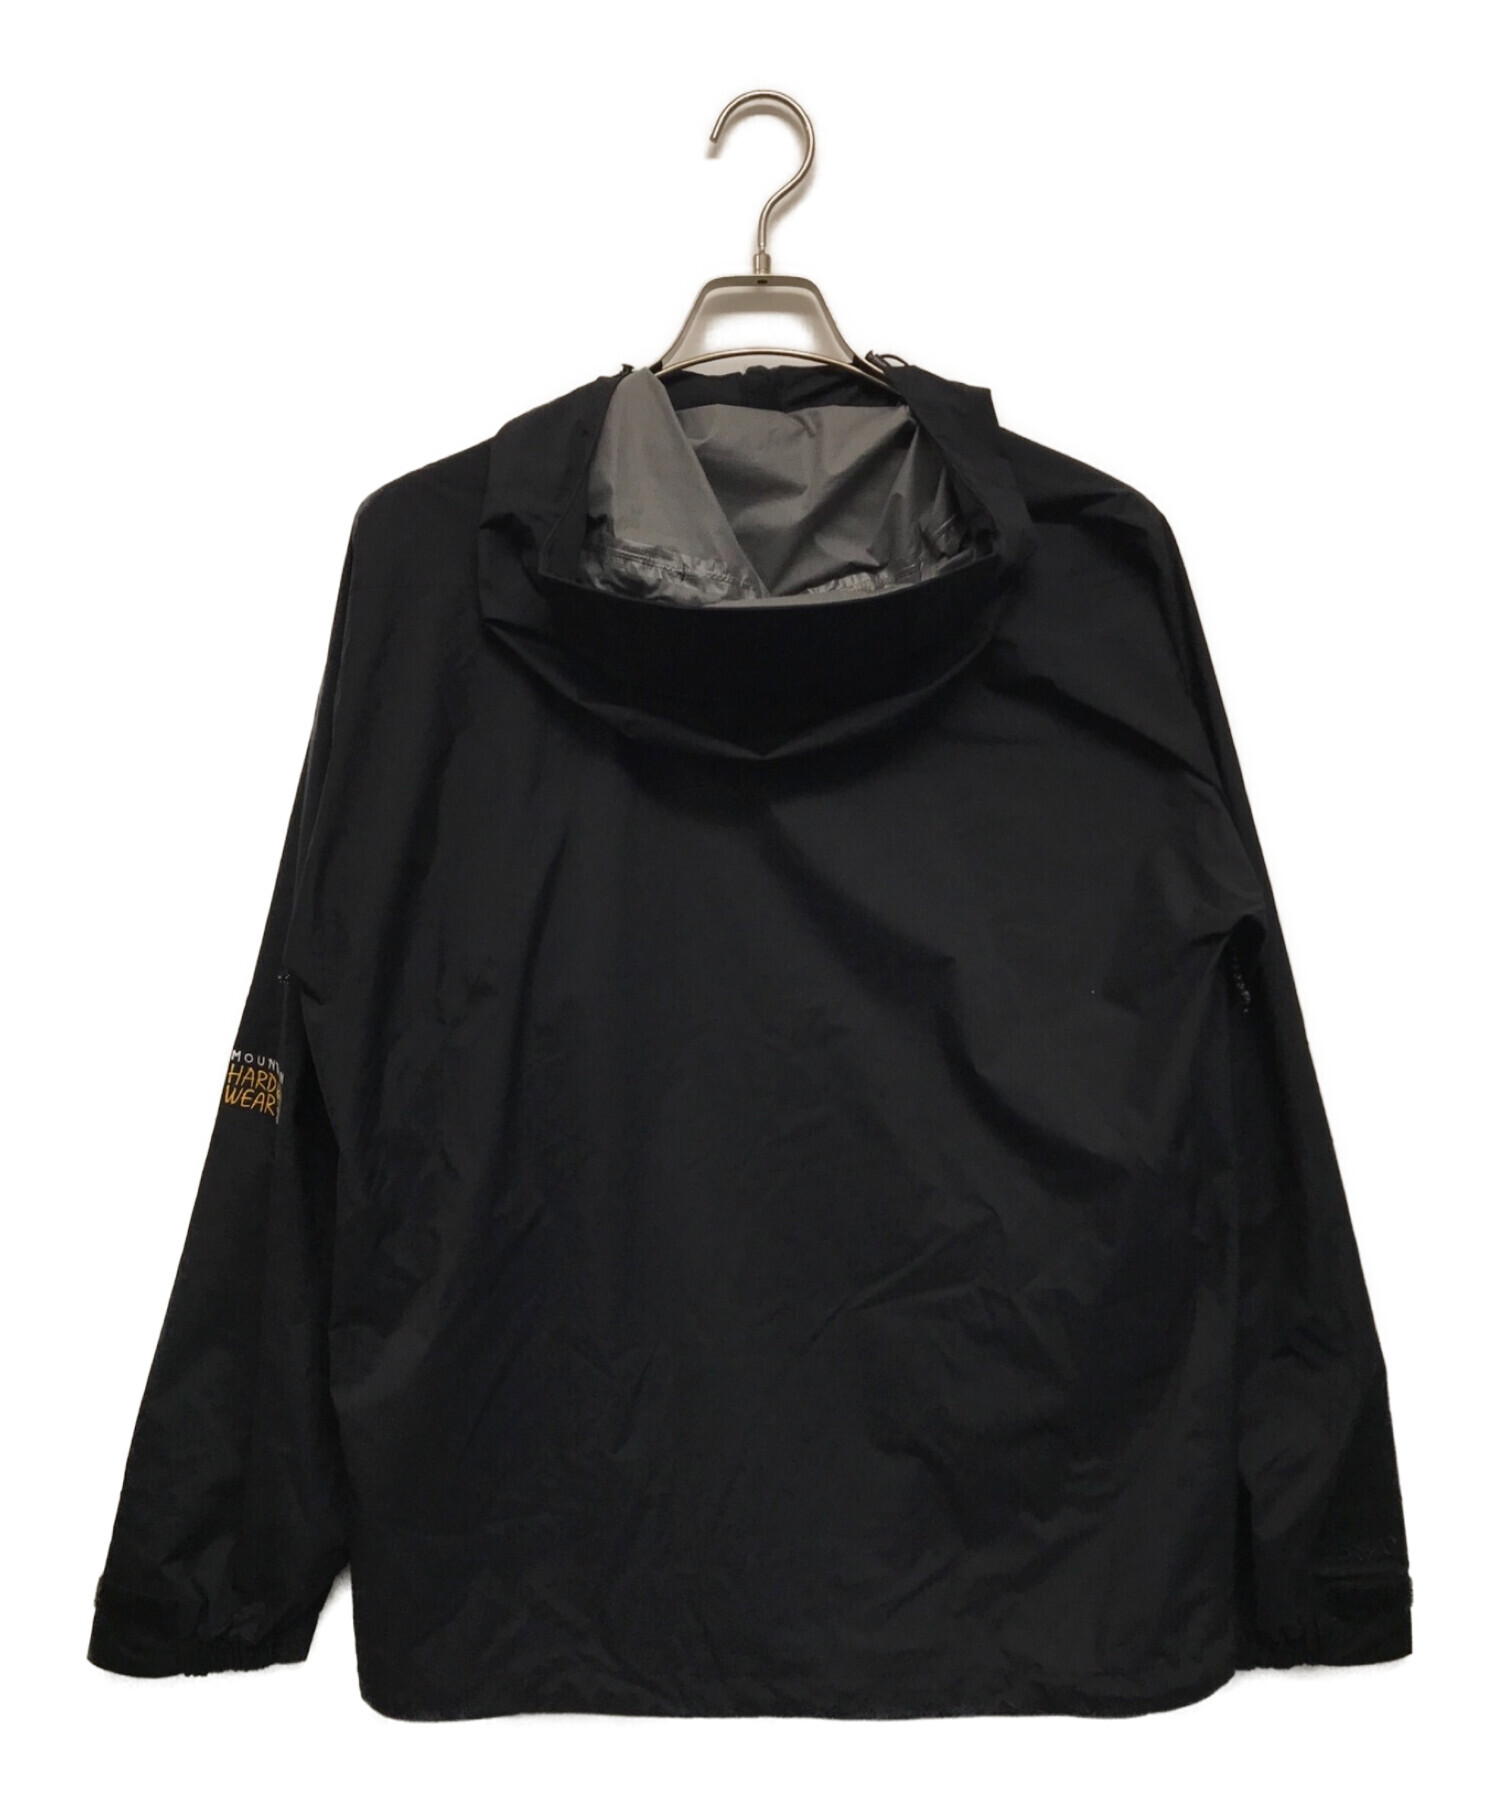 MOUNTAIN HARD WEAR (マウンテンハードウェア) T3 ジャケット ブラック サイズ:SIZE M 未使用品